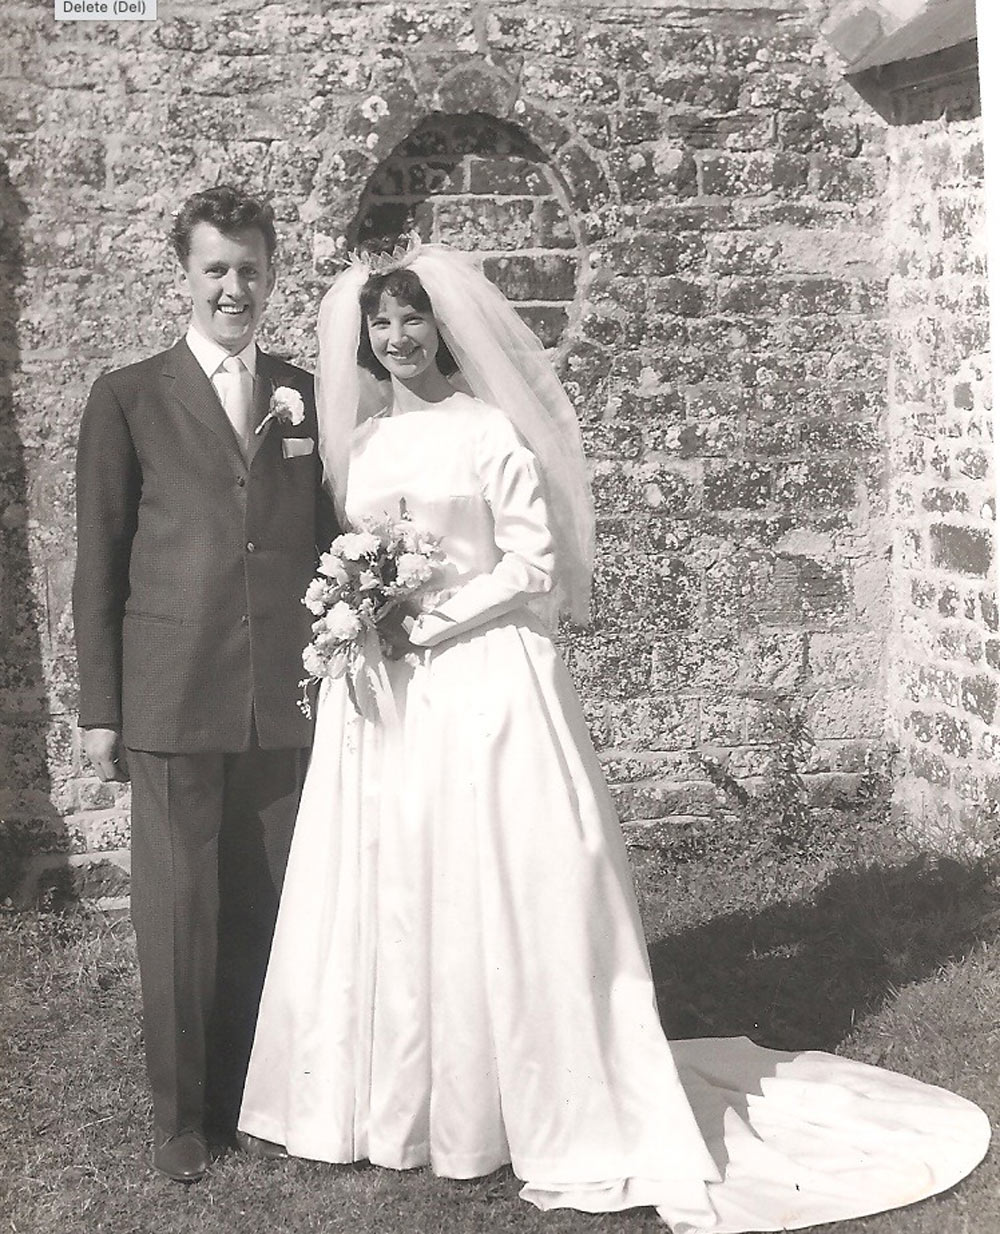 Ian and June Orbell wedding day, 1961 St Mary's Lytchett Matravers